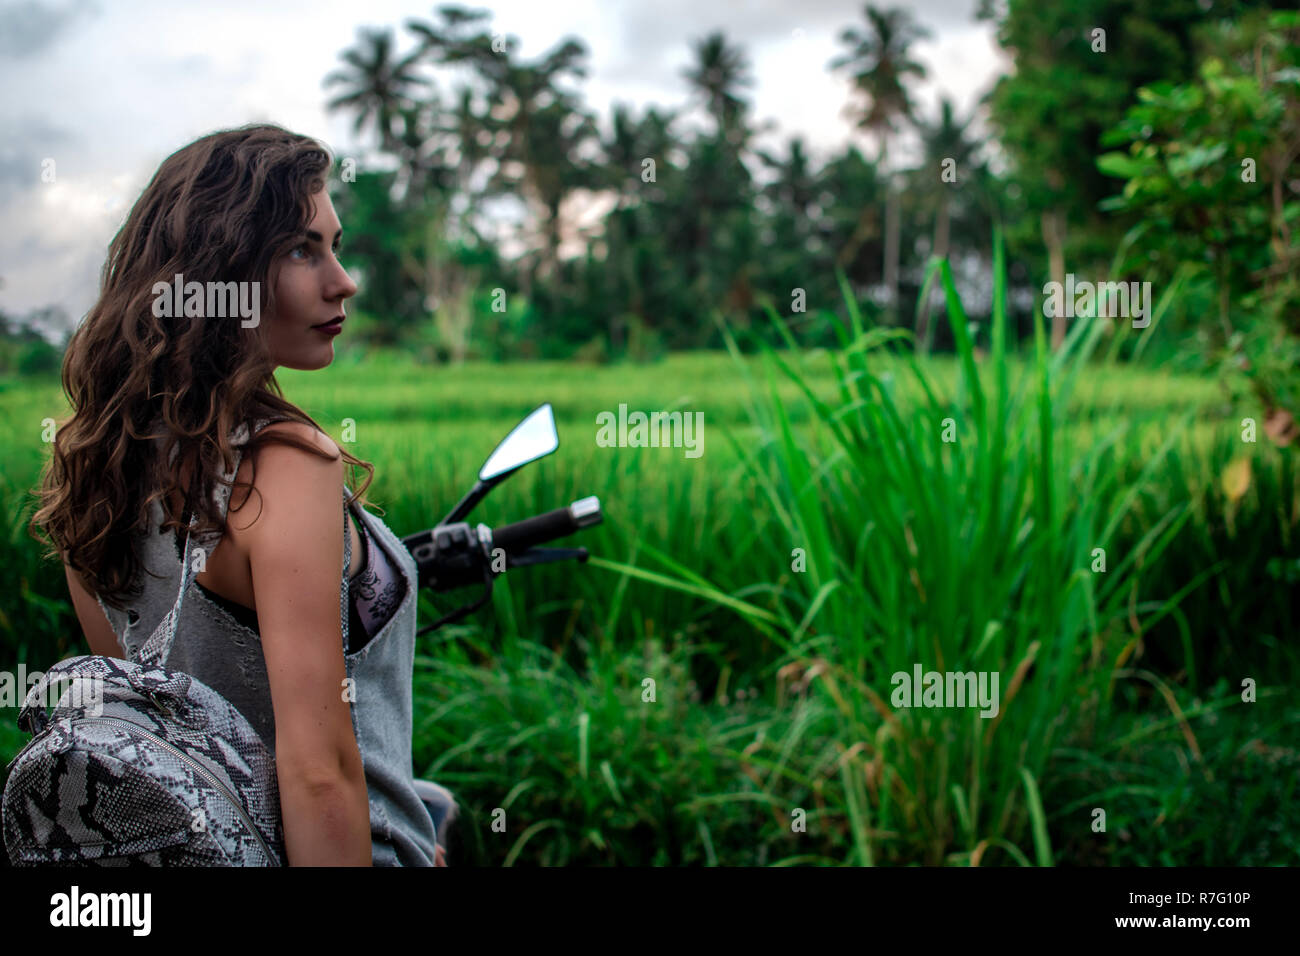 Une femme assise sur un vélo près d'un paysage fantastique, jungle, forêt tropicale en face d'elle et la nature.Concept de style, la mode dans l'aventure et les voyages avec accessoire python Banque D'Images